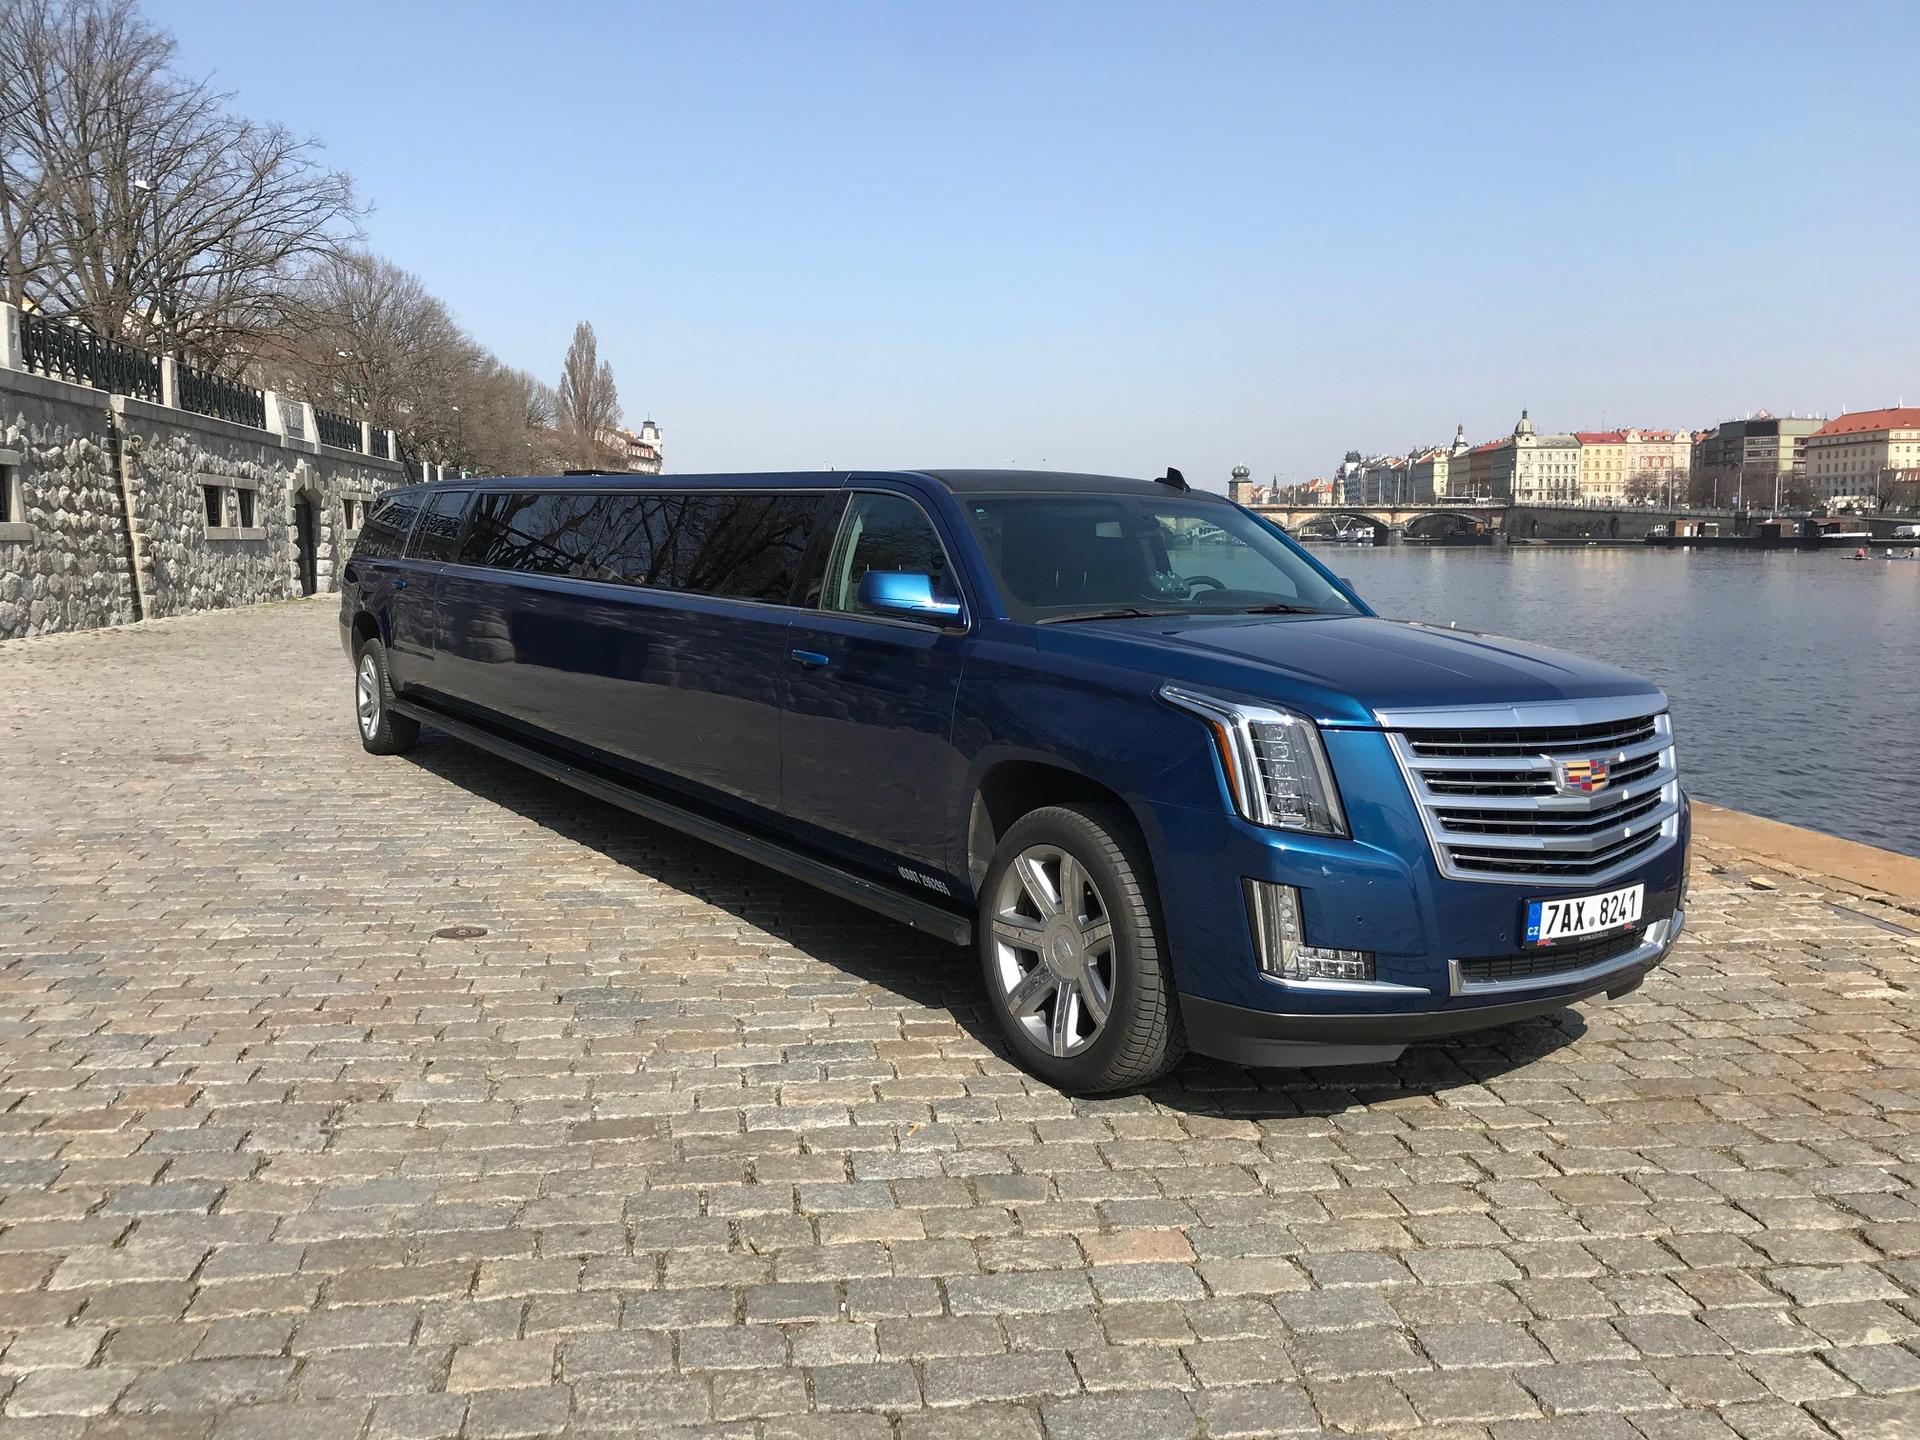 partyvpraze - Jedinečný modrý Cadillac - jediný v Praze! Luxusní jízda jak pro pánskou tak pro dámskou rozlčku